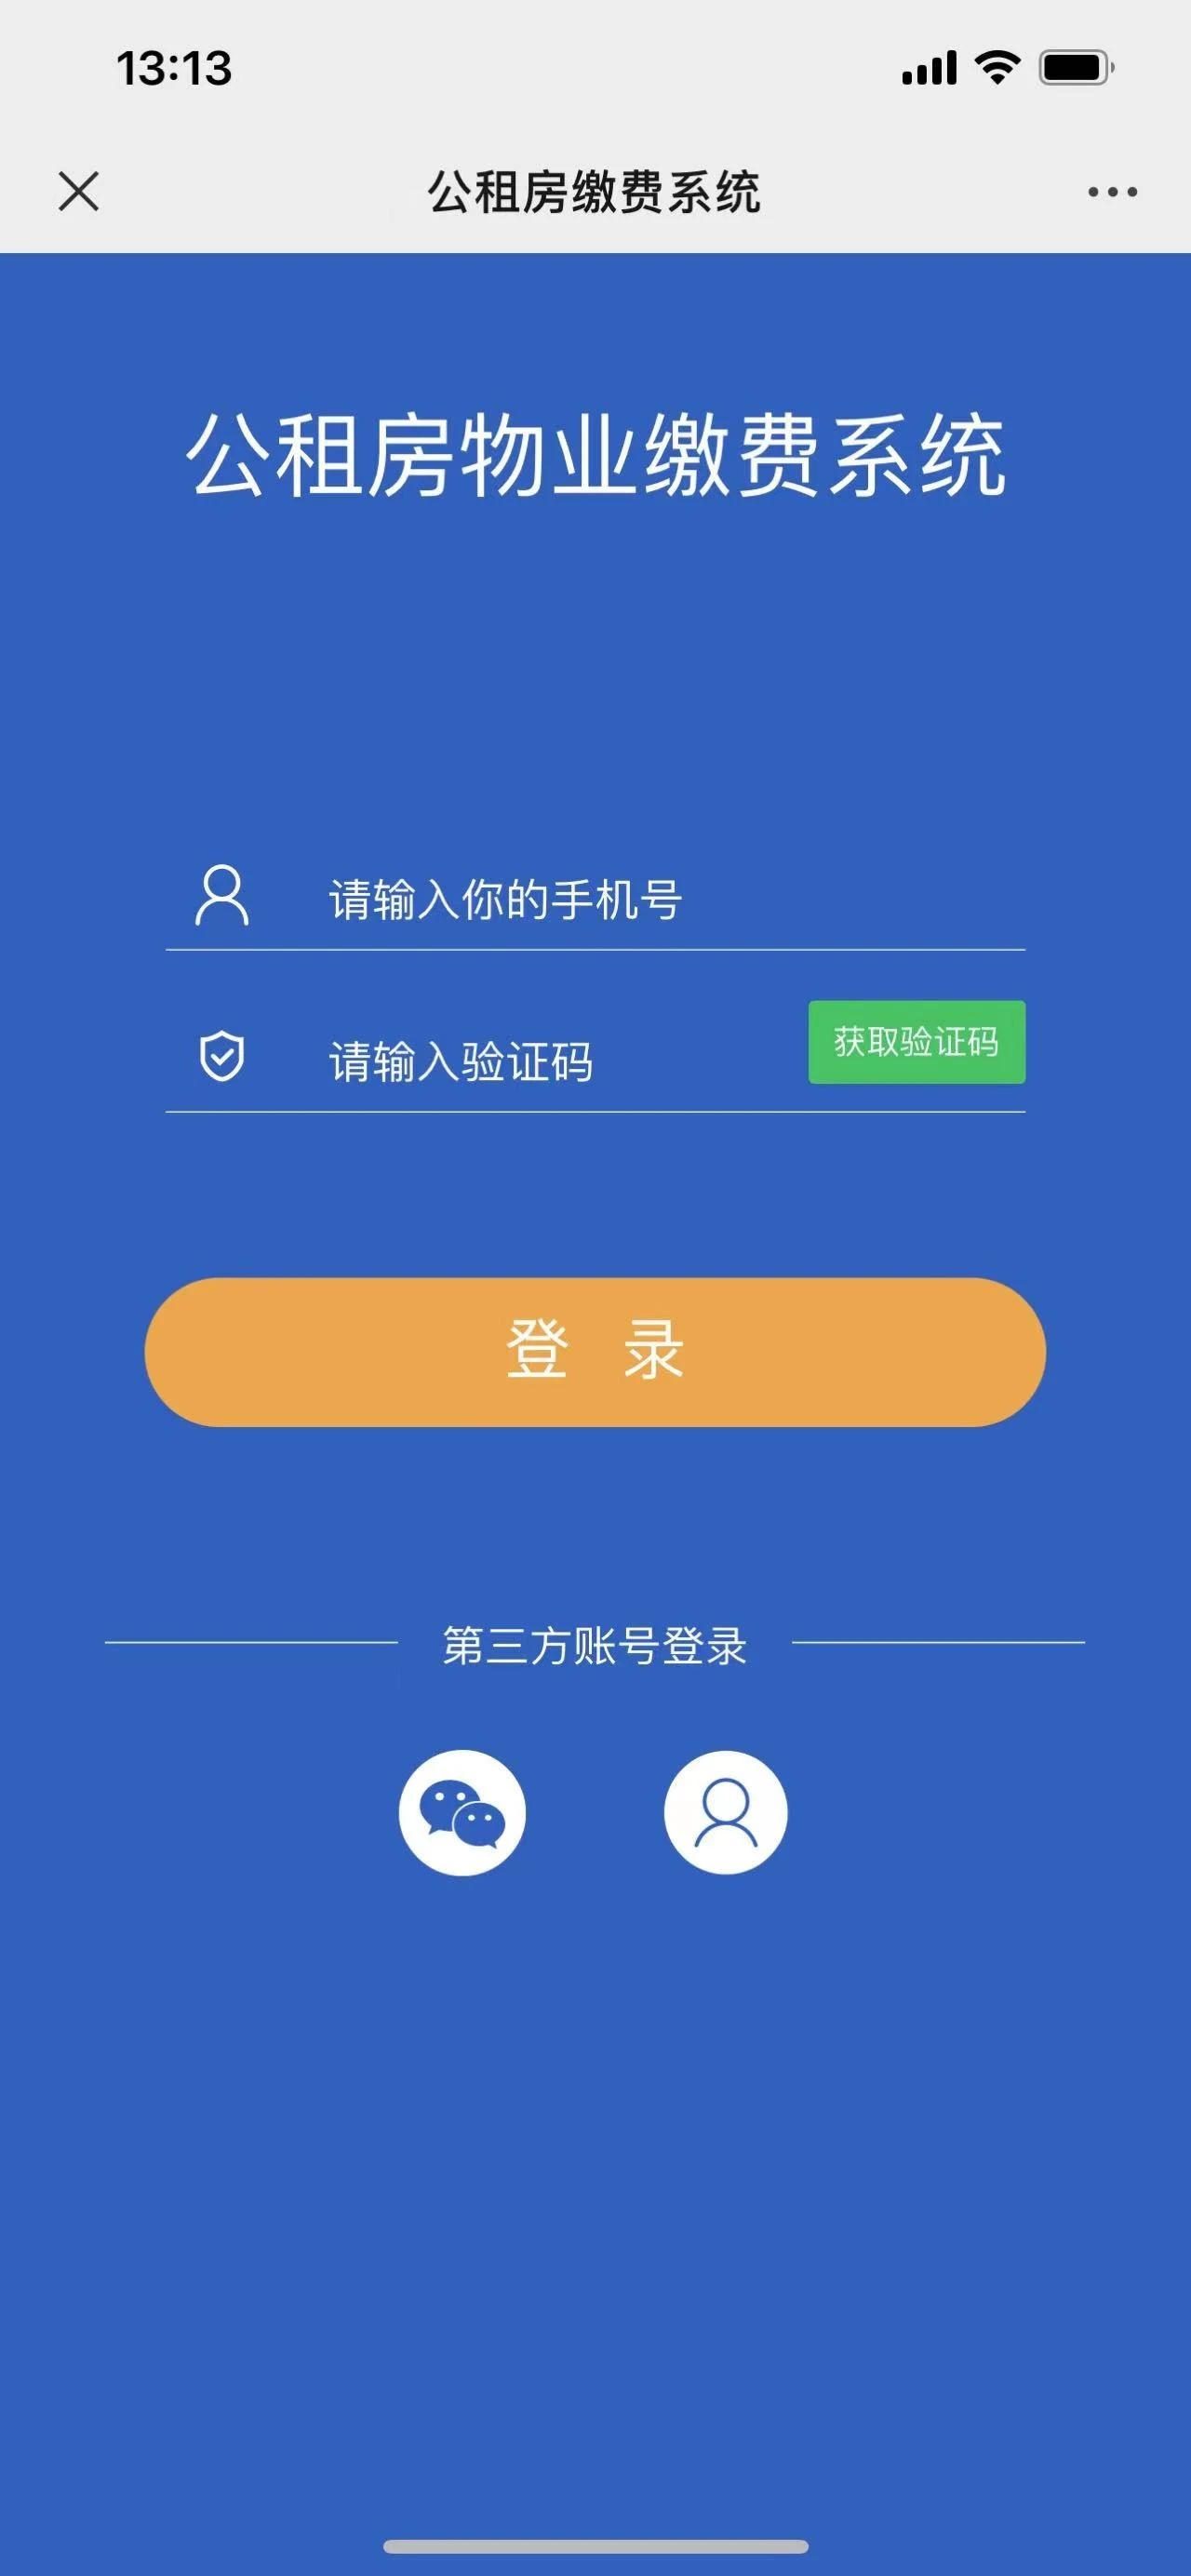 深圳云朵信息科技有限公司